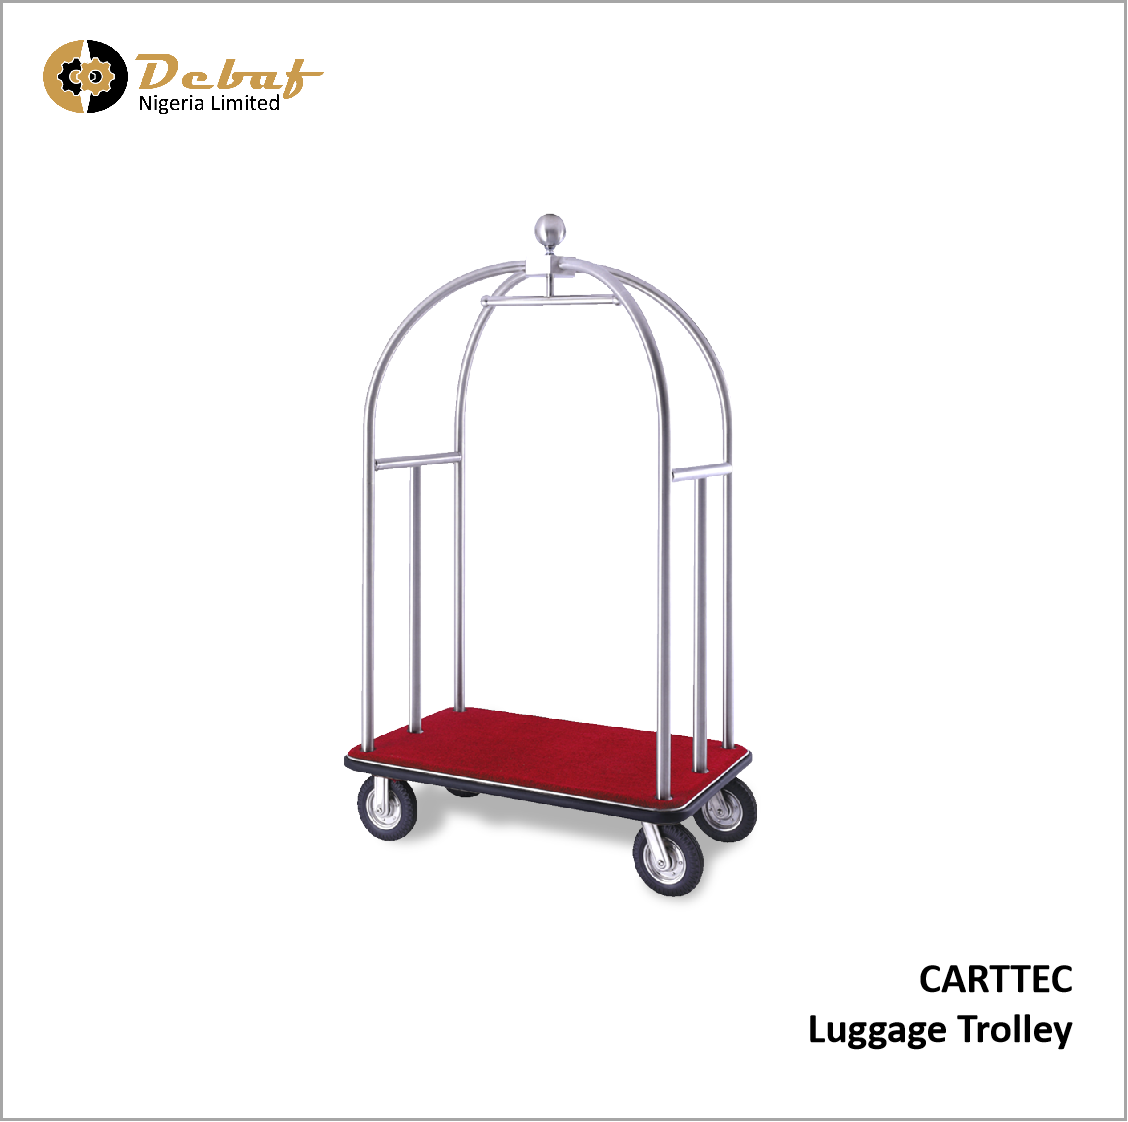 Debaf - CARTTEC Luggage Trolley